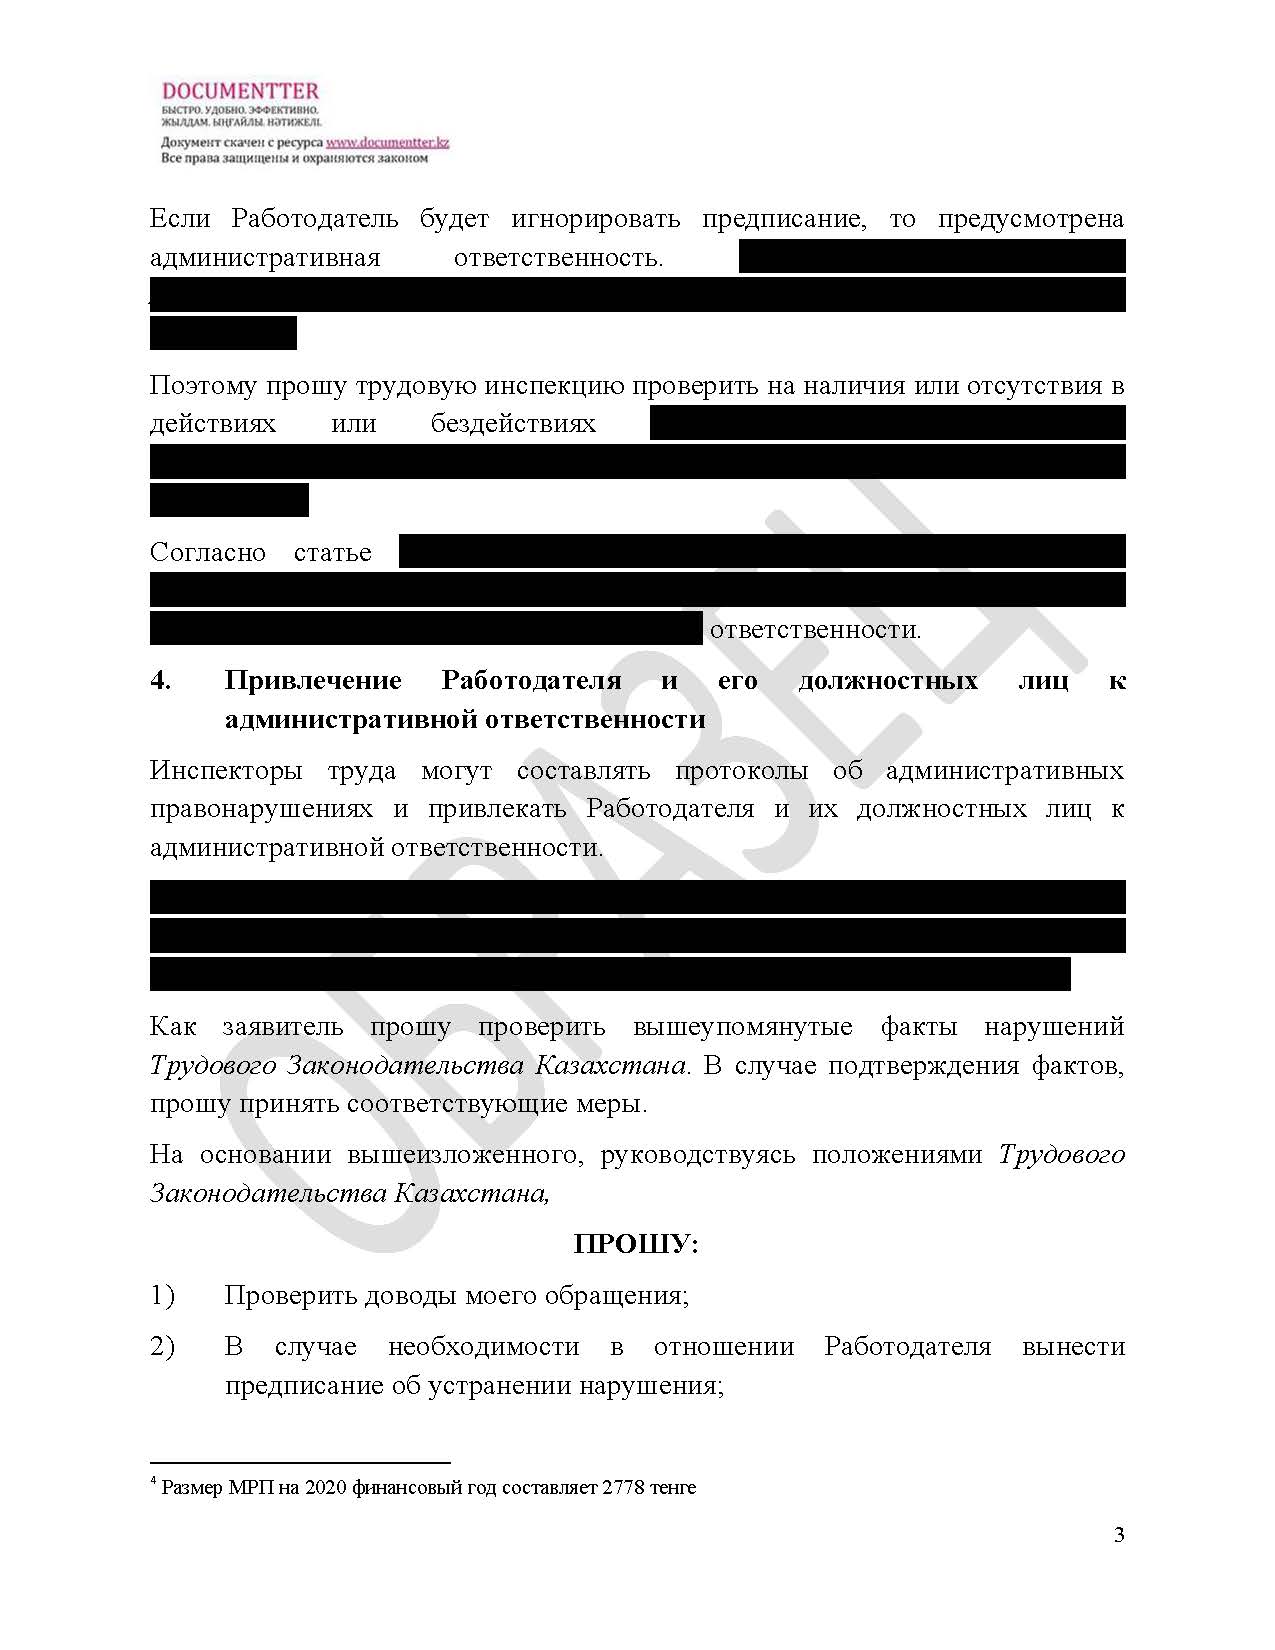 Жалоба в трудовую инспекцию, если не выплатили зарплату | documentterkz.com в Казахстане